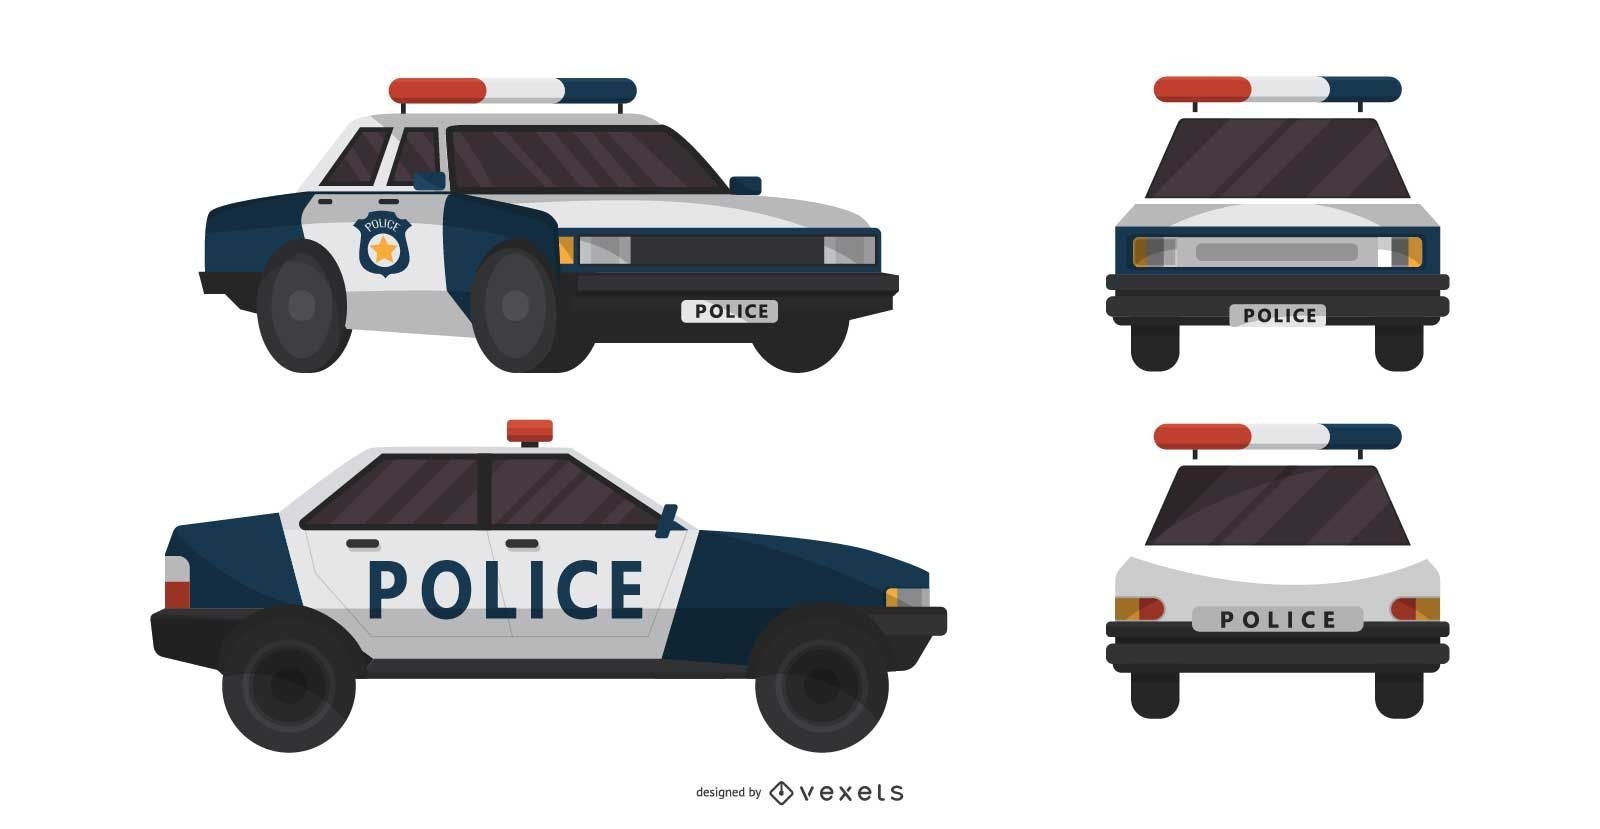 Police Carro Imagens – Download Grátis no Freepik